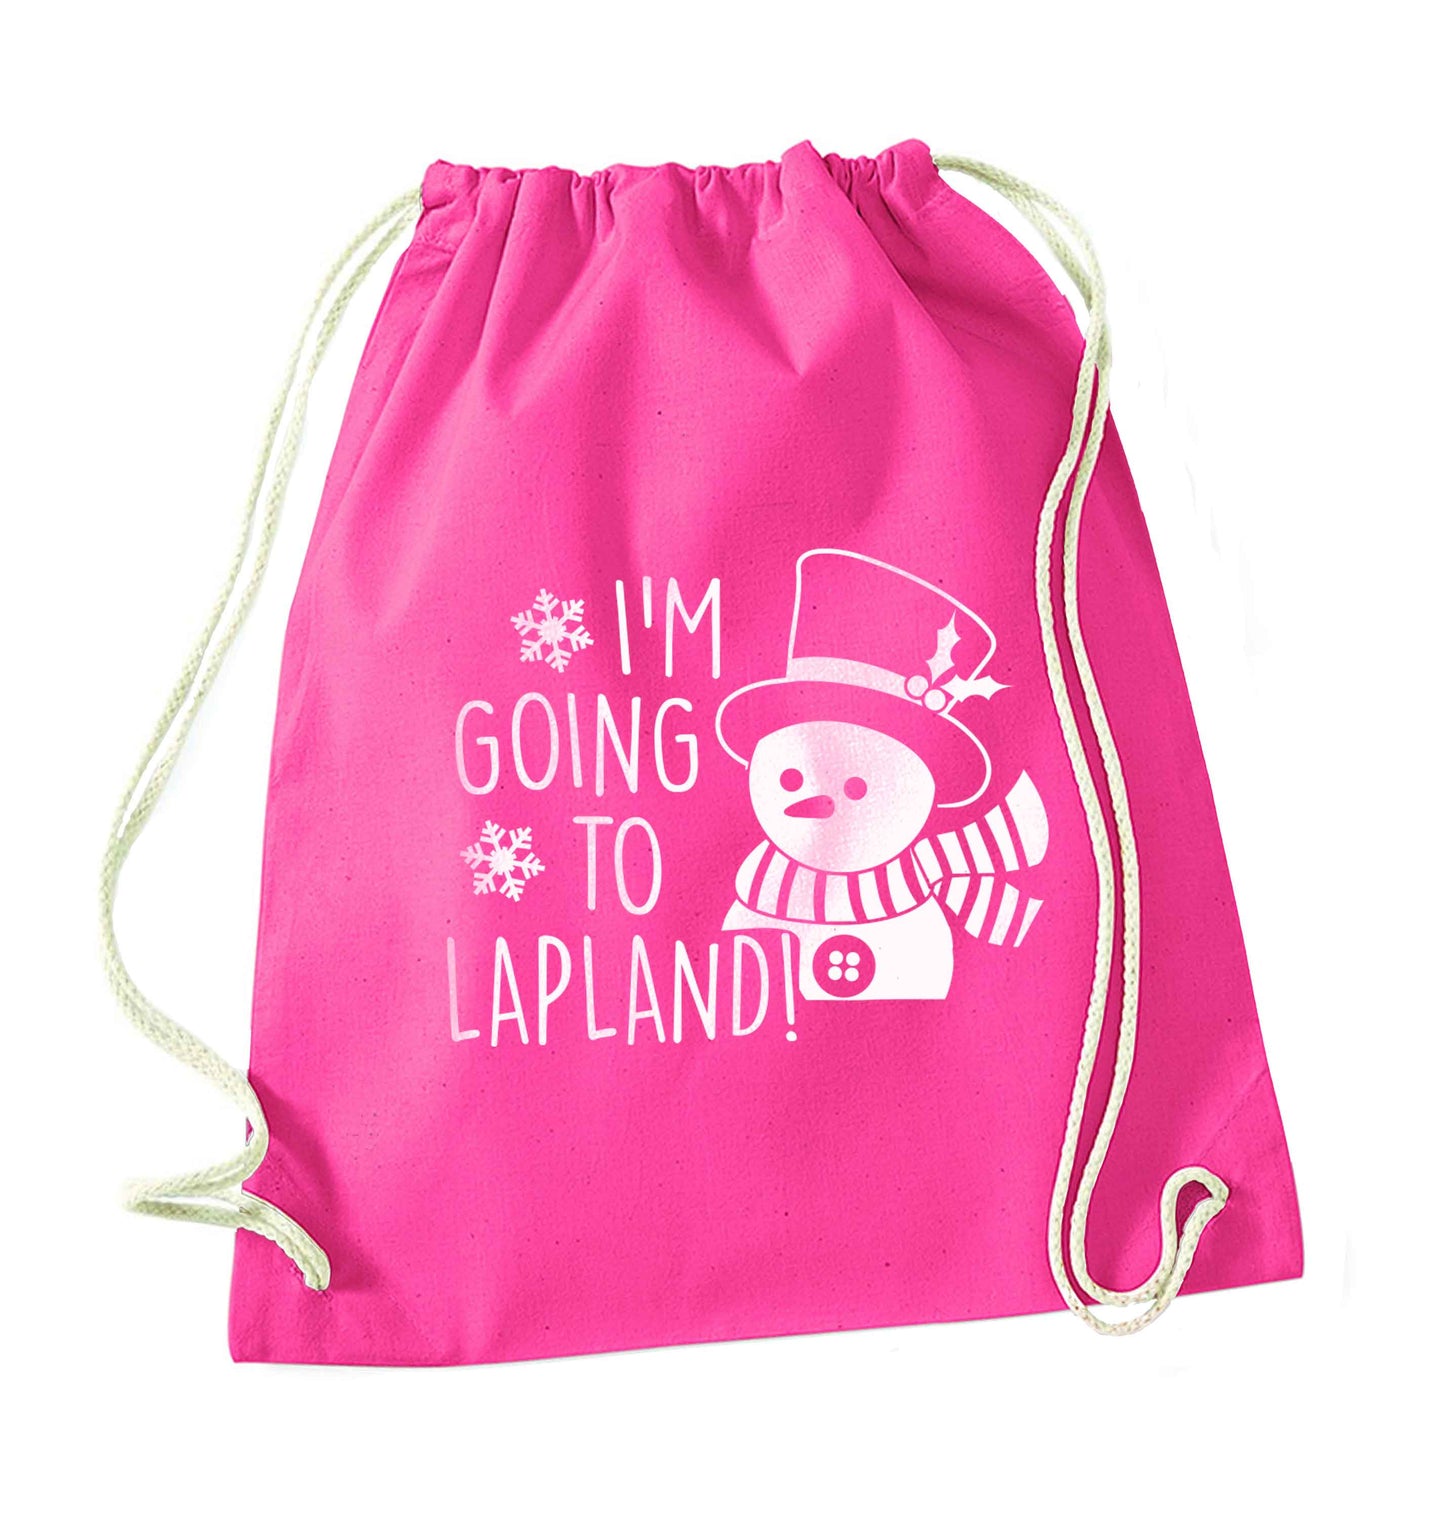 I'm going to Lapland pink drawstring bag